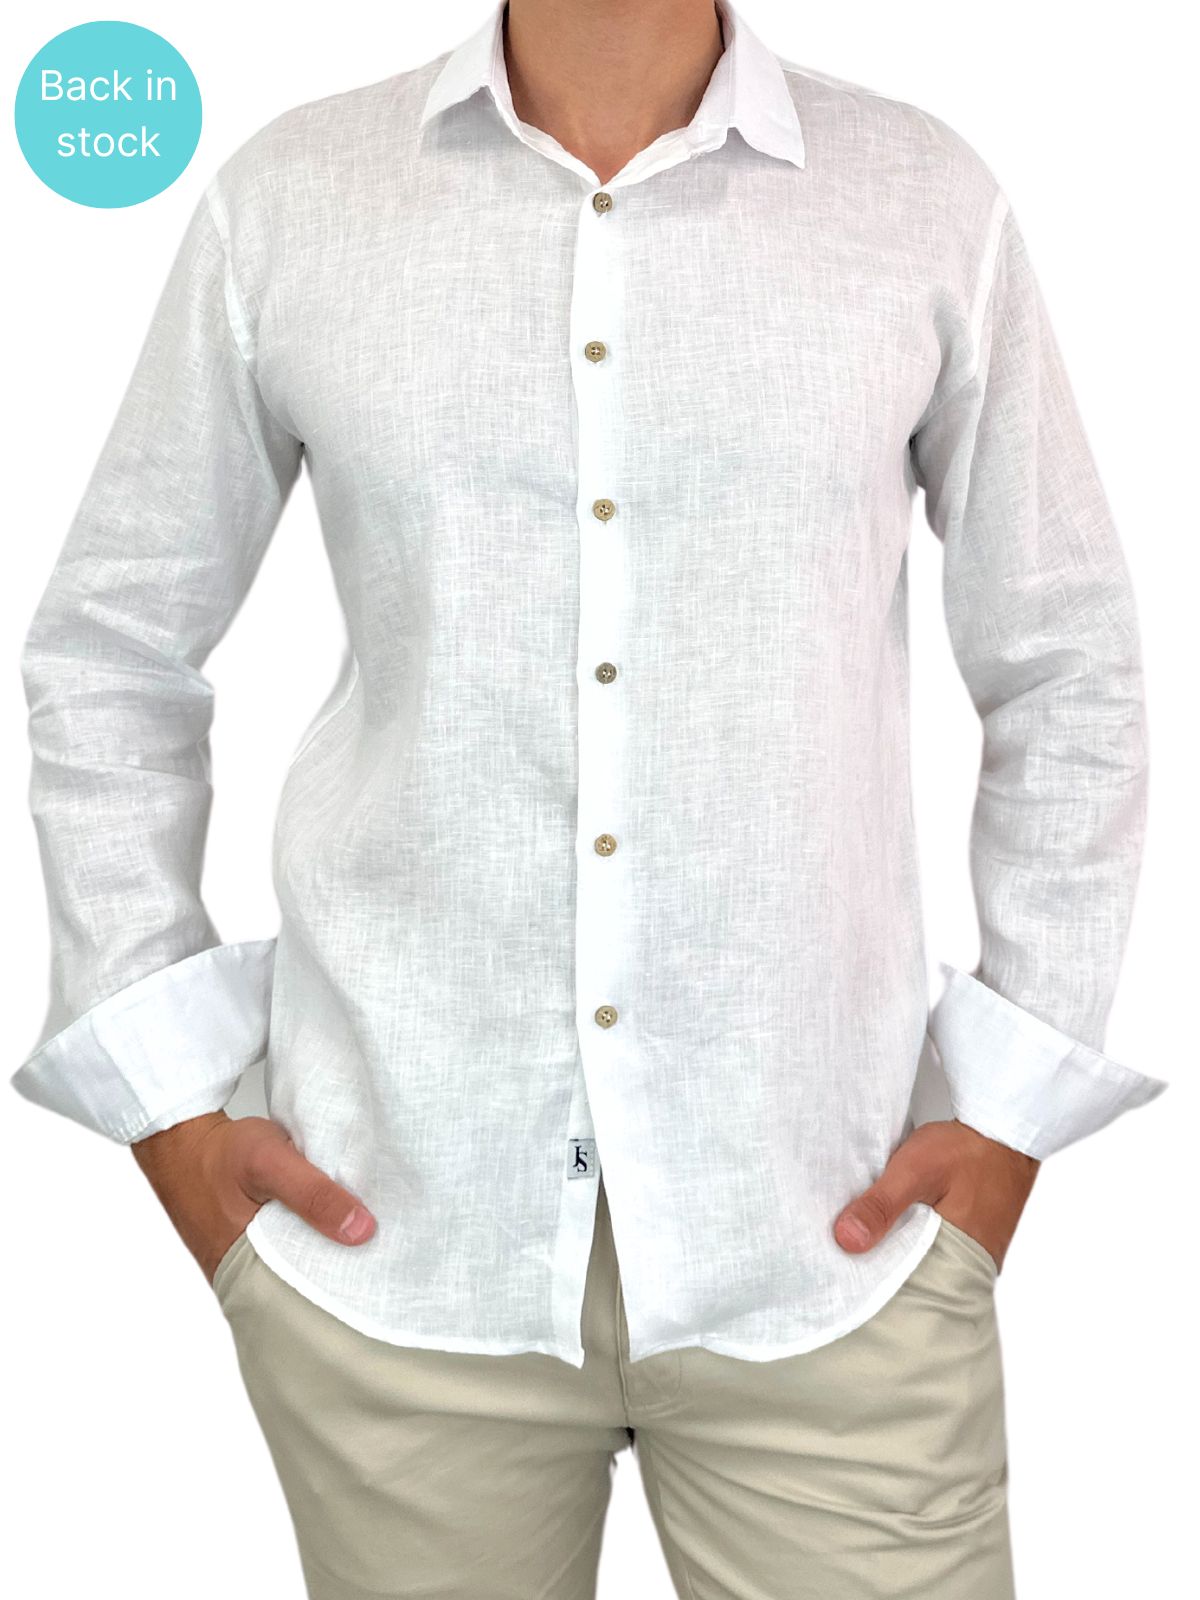 Byron Bay White Linen L/S Shirt